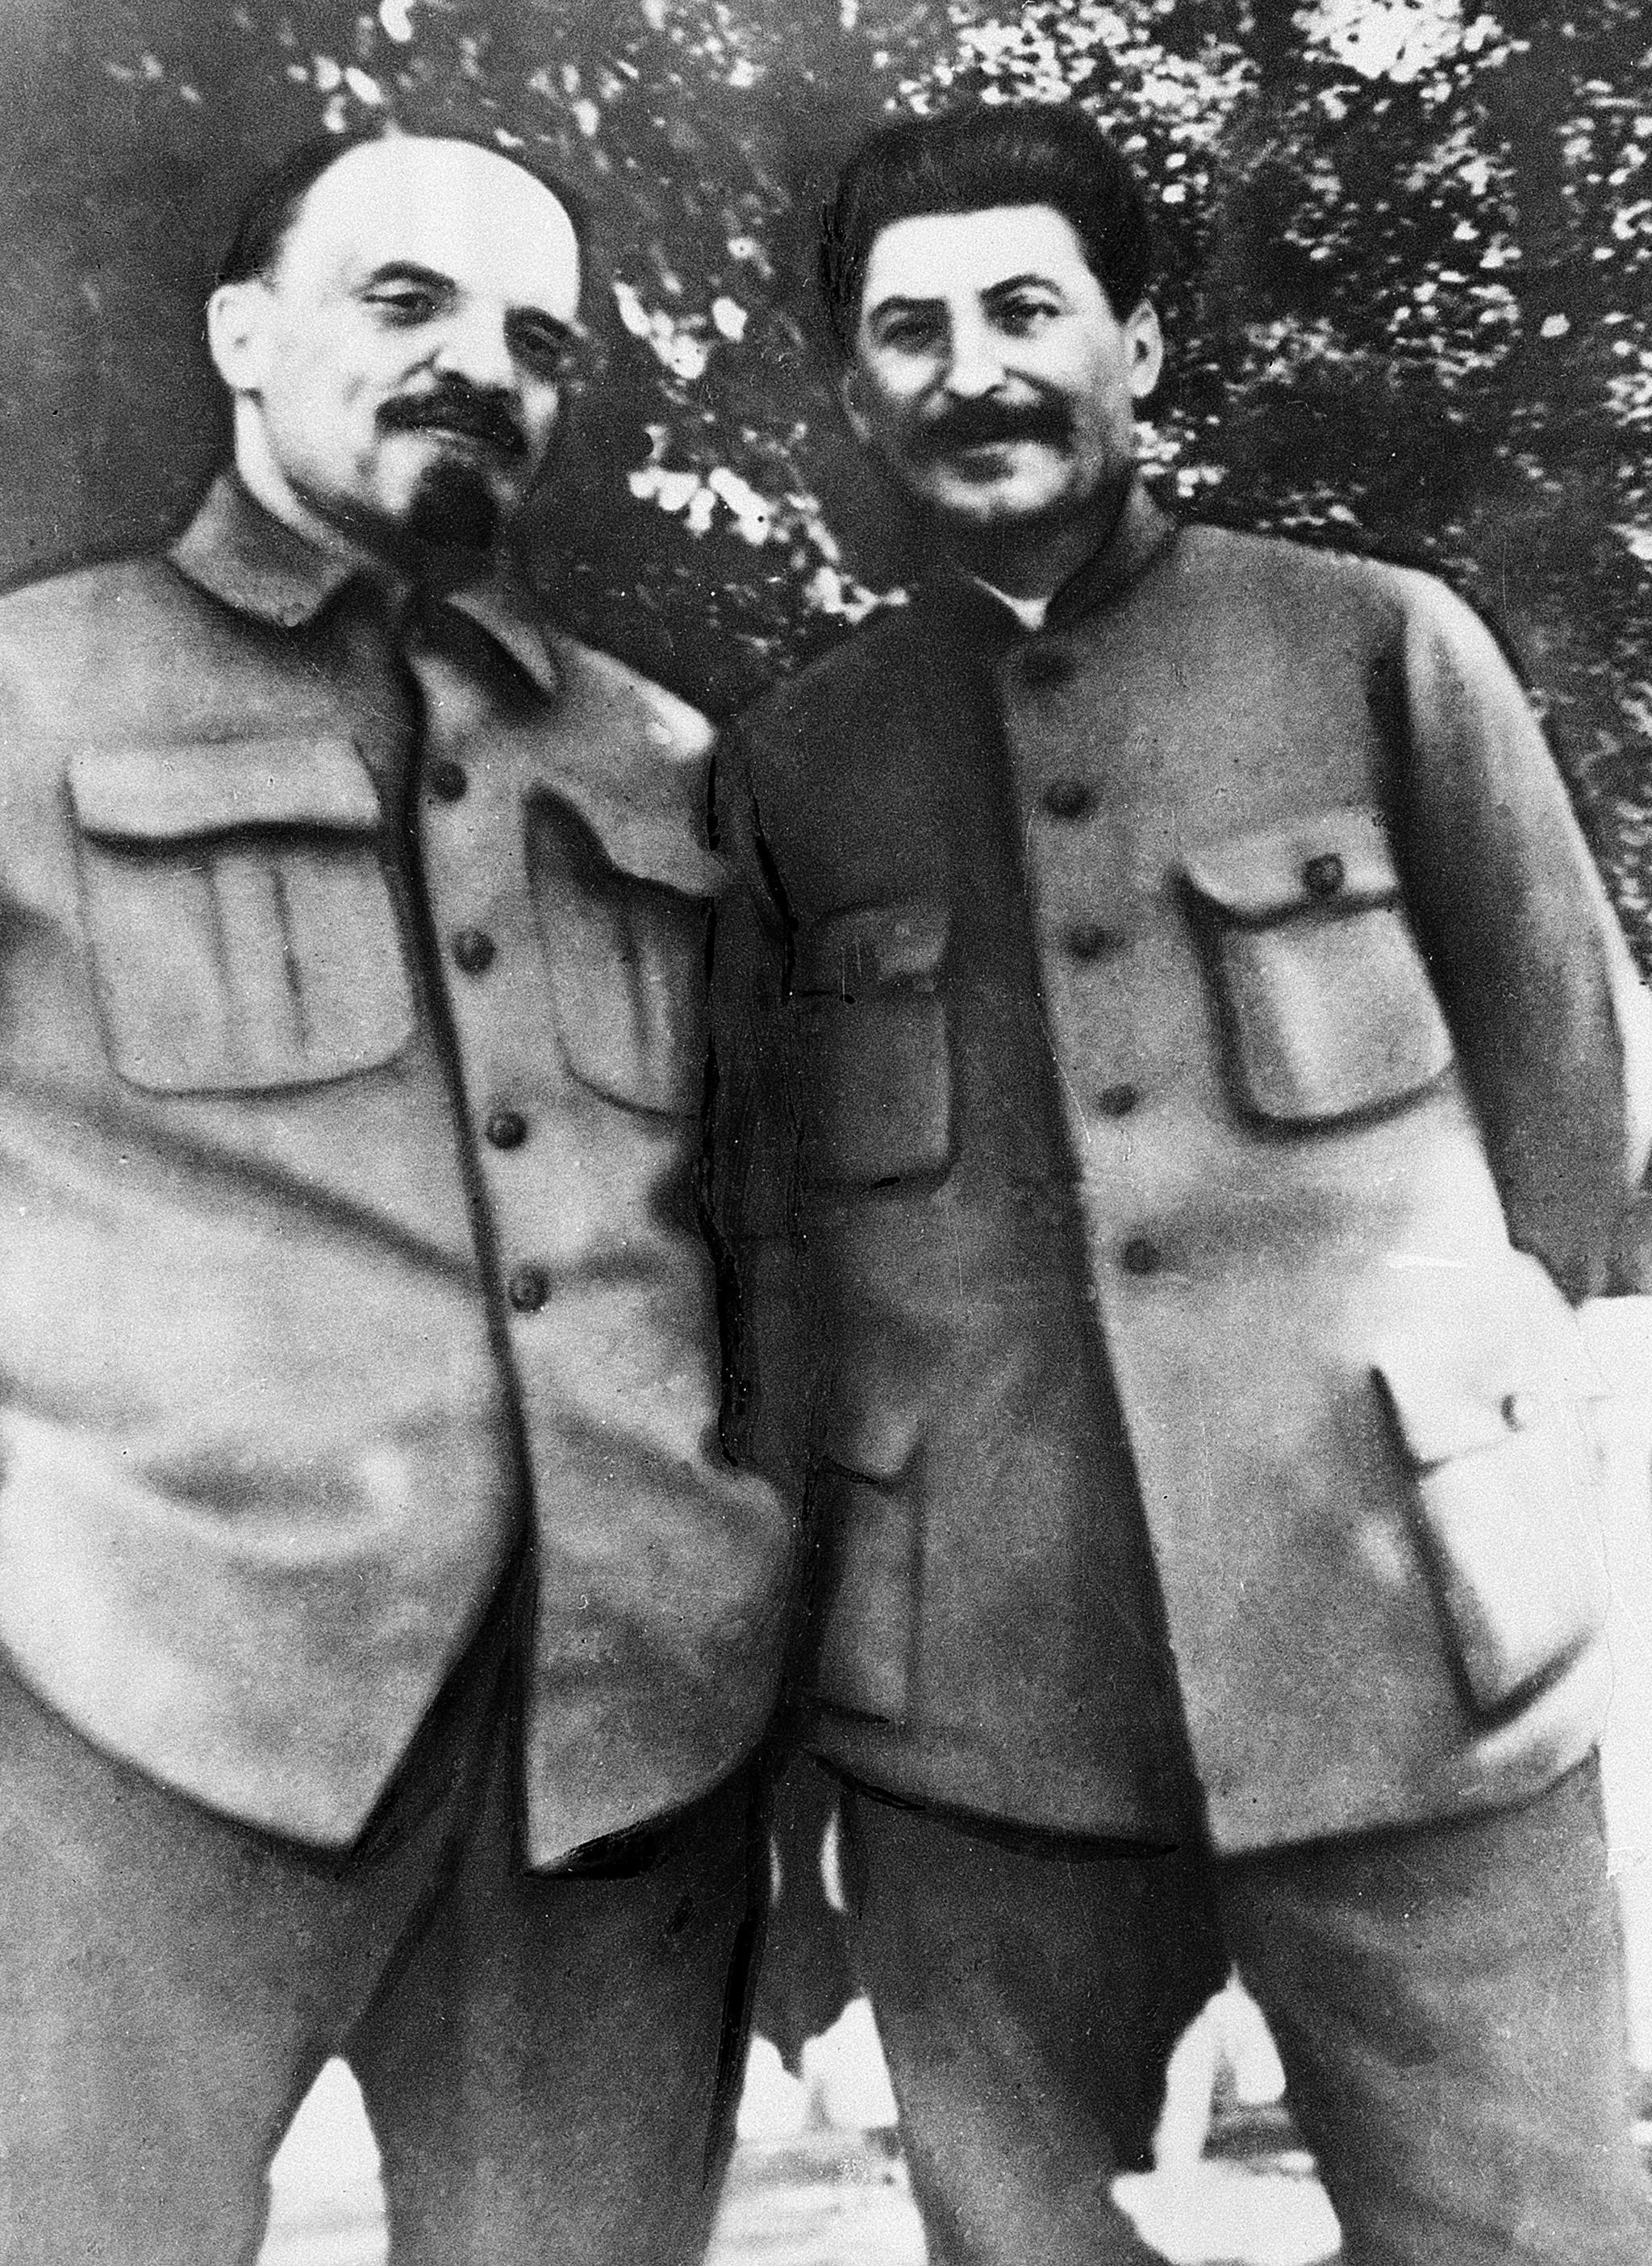   Kommunismen var en ideologi som entret den historiske scenen med første verdenskrig og som ikke kan forstås uten den, skriver kronikkforfatterne. Bildet viser Lenin (t.v.) og Stalin på godset Gorki i Moskva. 